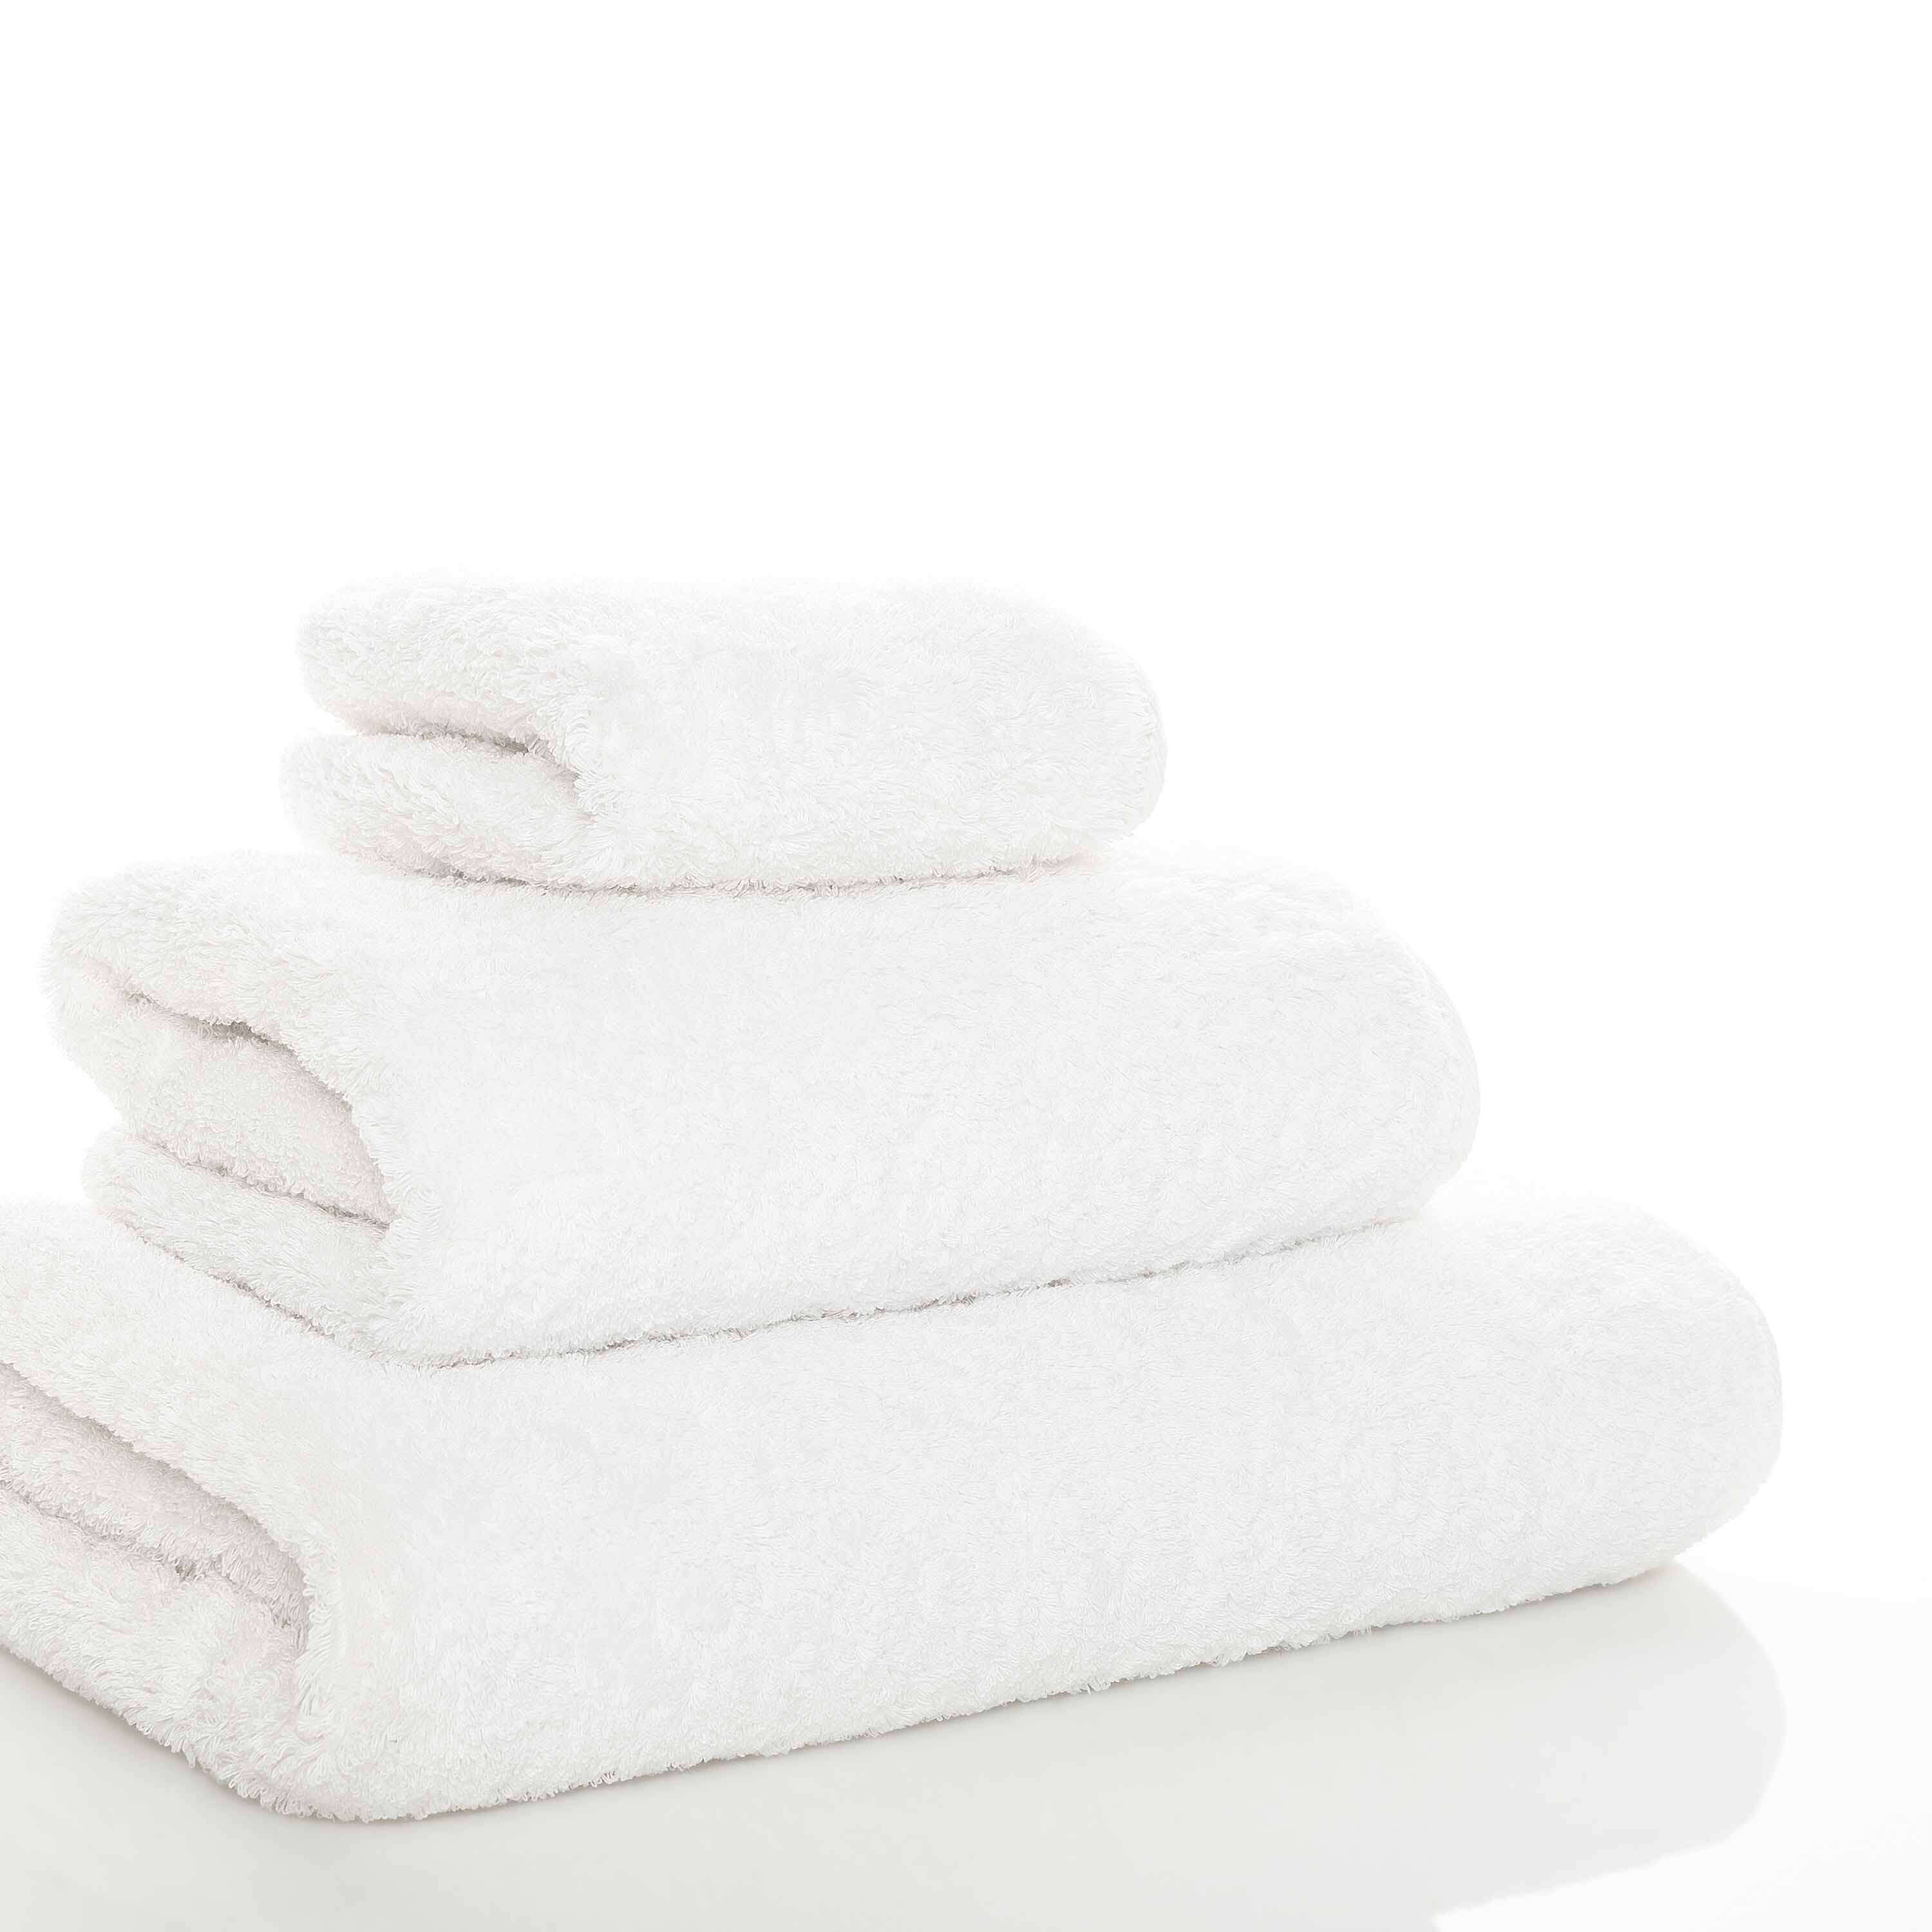 Элитное полотенце Egoist Range White ☞ Размер: 50 x 30 см